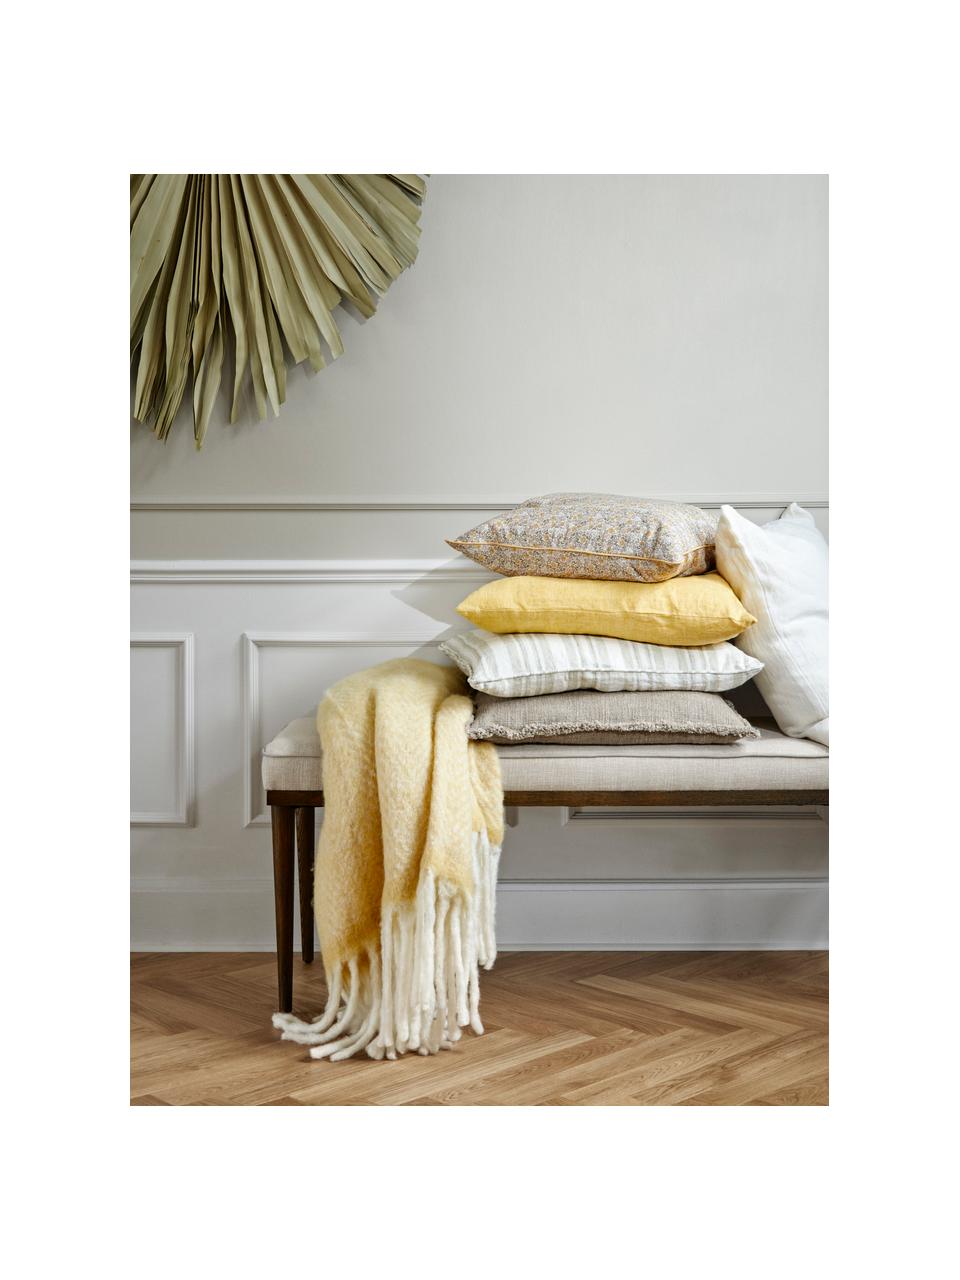 Plaid en laine jaune avec franges Mathea, 60 % laine, 25 % acrylique, 15 % nylon, Jaune, couleur crème, long. 170 x larg. 130 cm